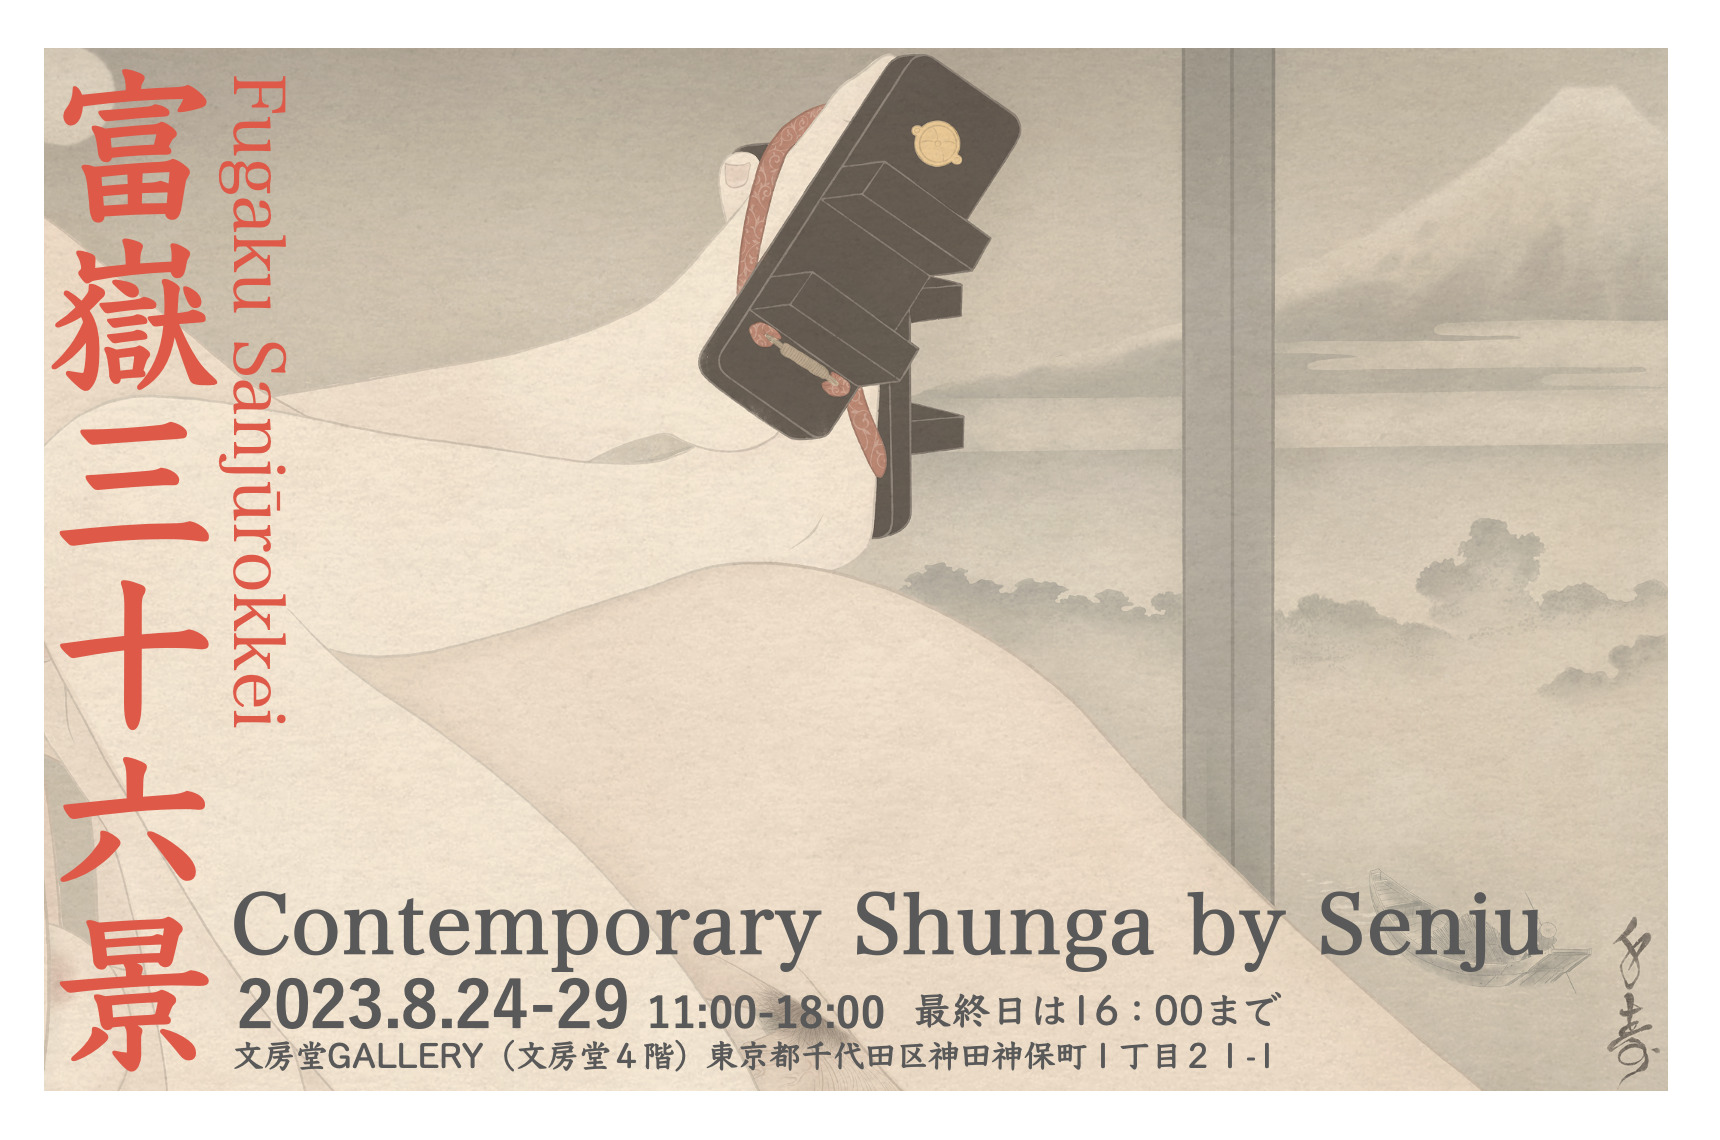 Fugaku sanjurokkei (36 views of mount Fuji) shunga print series